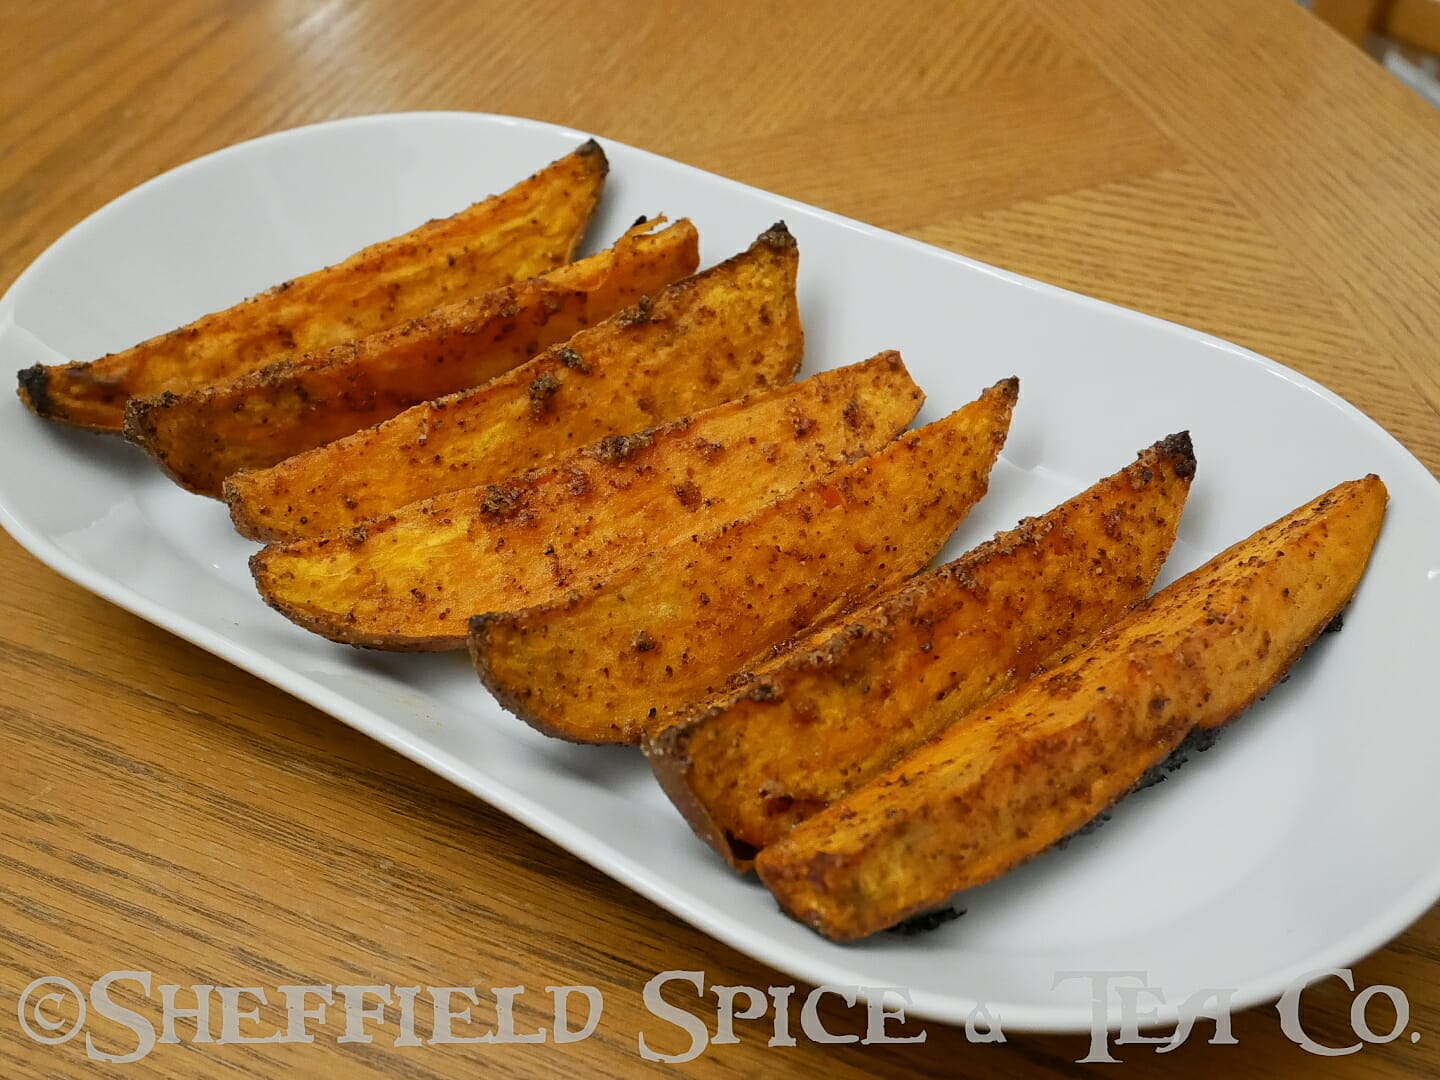 chile glazed sweet potato wedges